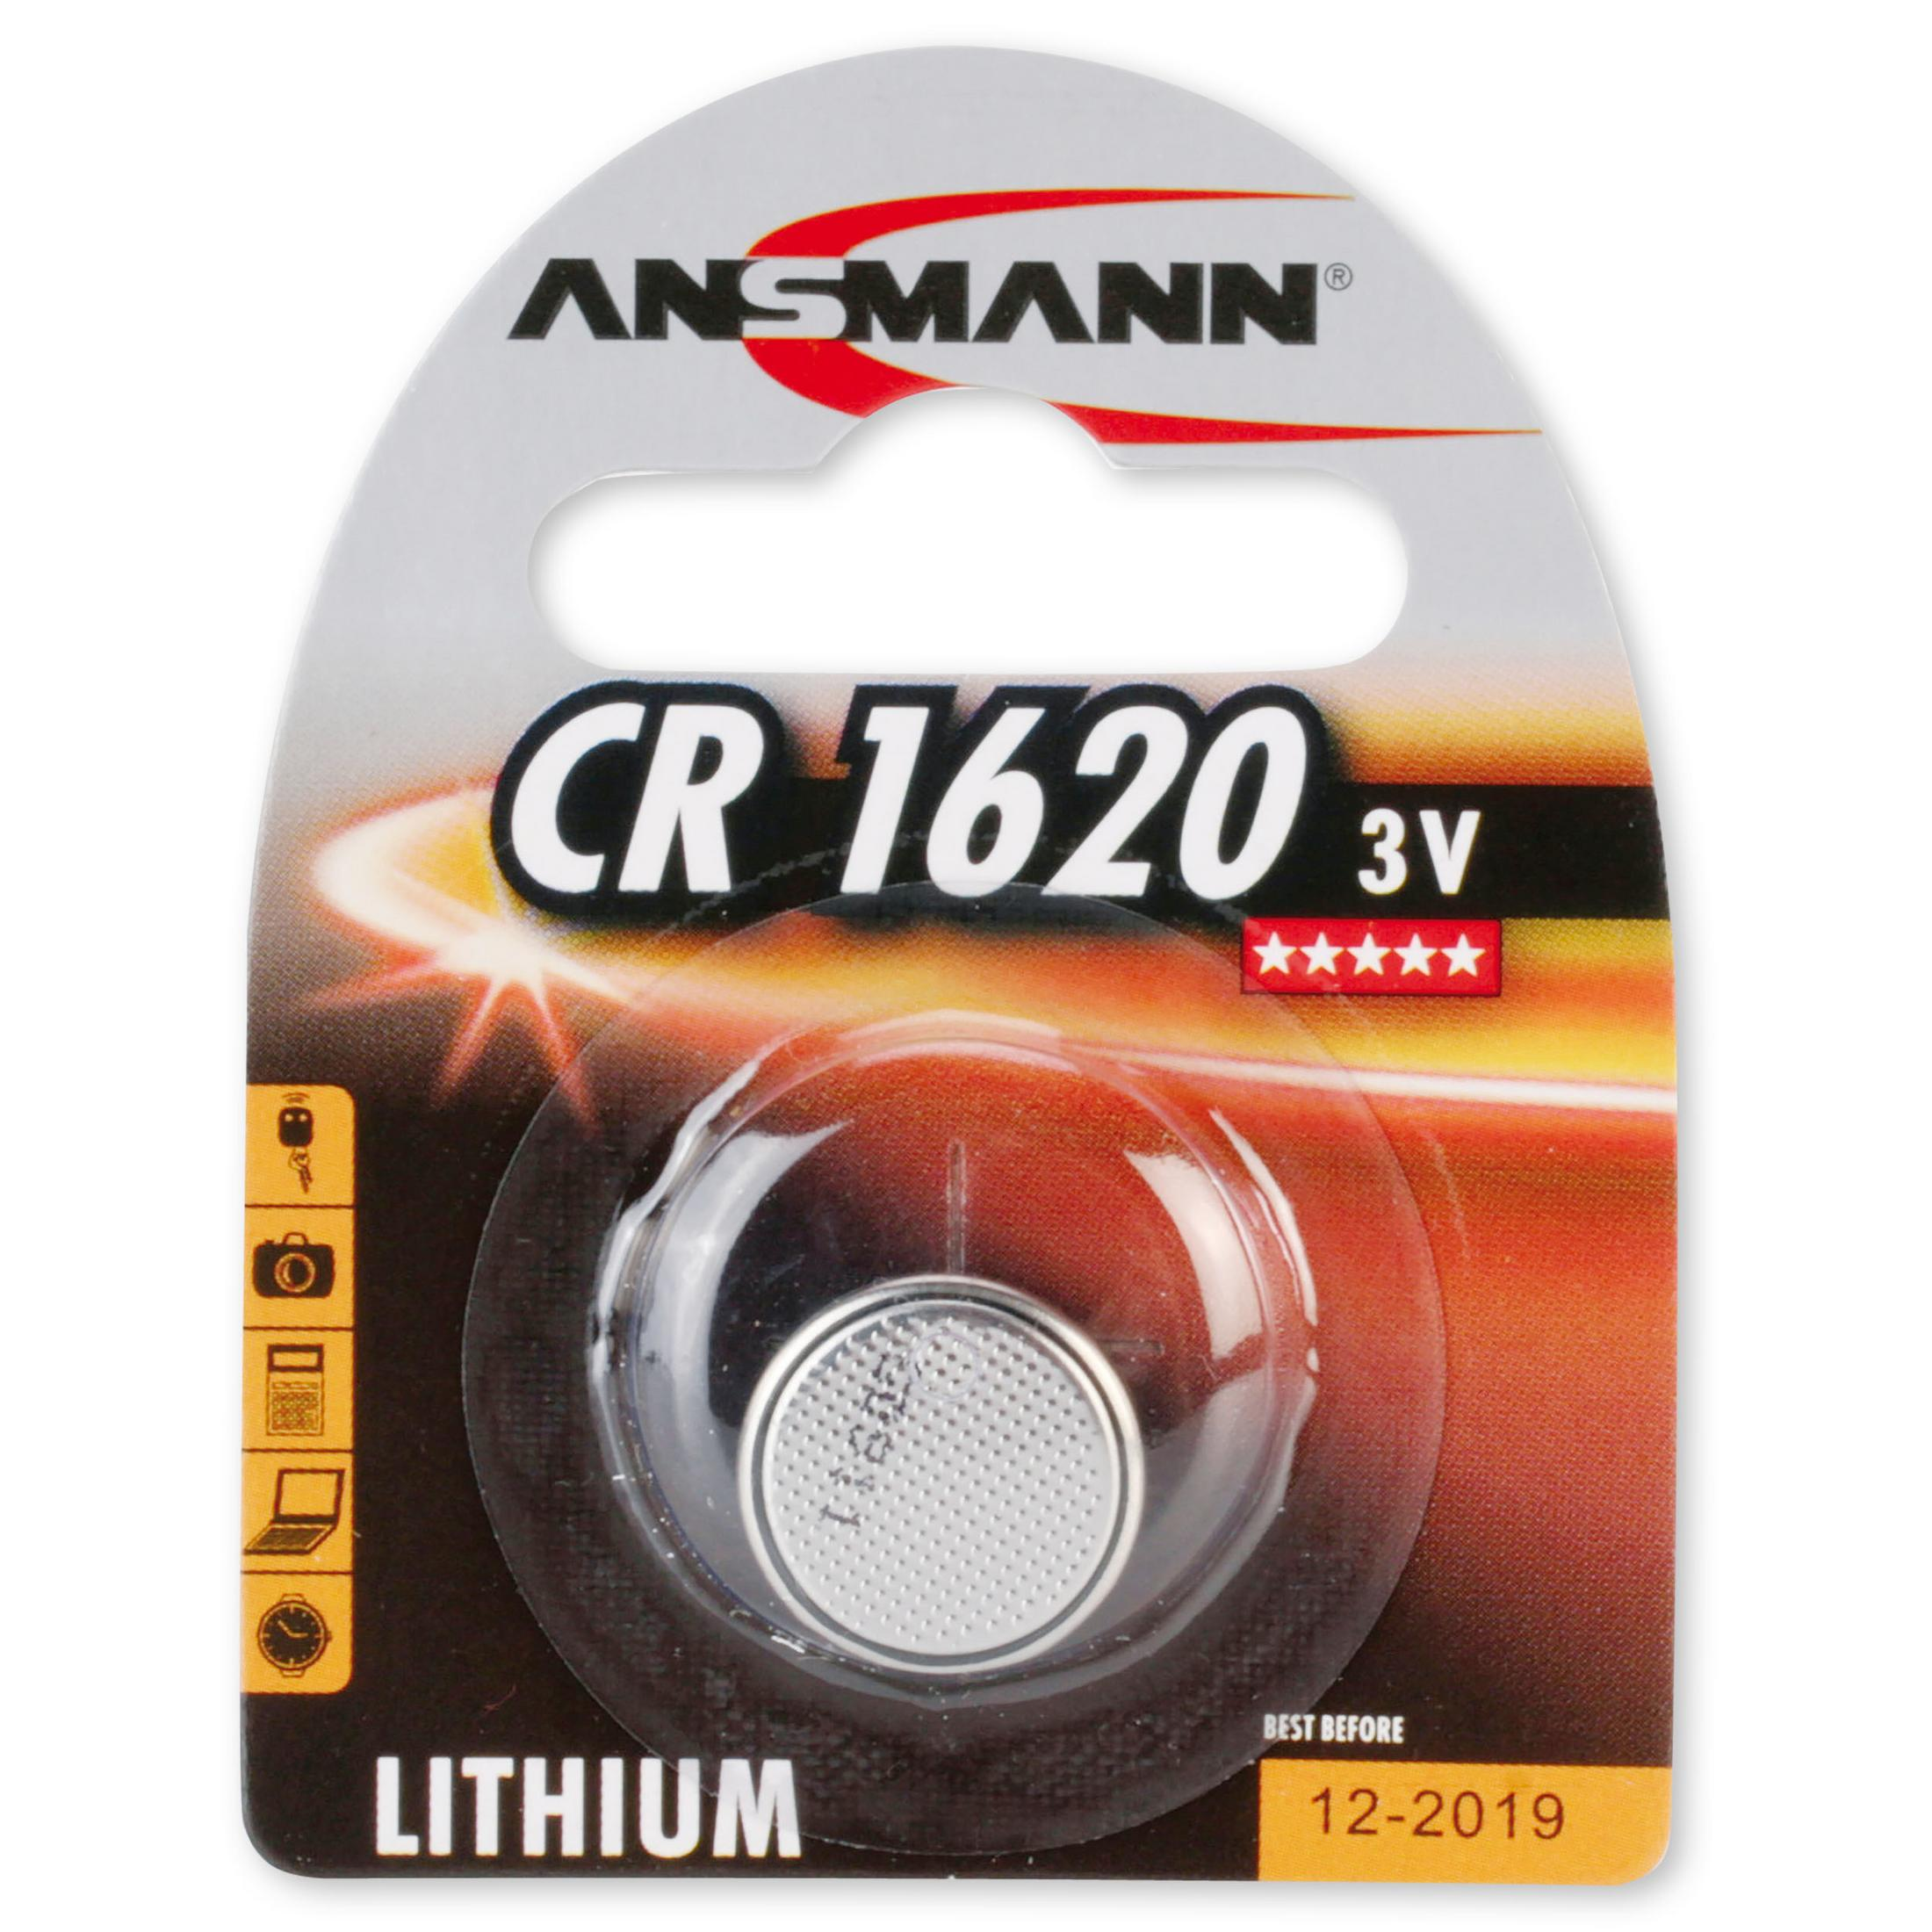 ANSMANN ANSMANN 3 Lithium Knopfzellen, / Energie Lithium, Licht Stück Knopfzellen 3V / Knopfzelle CR1620 Volt Strom 5020072 1